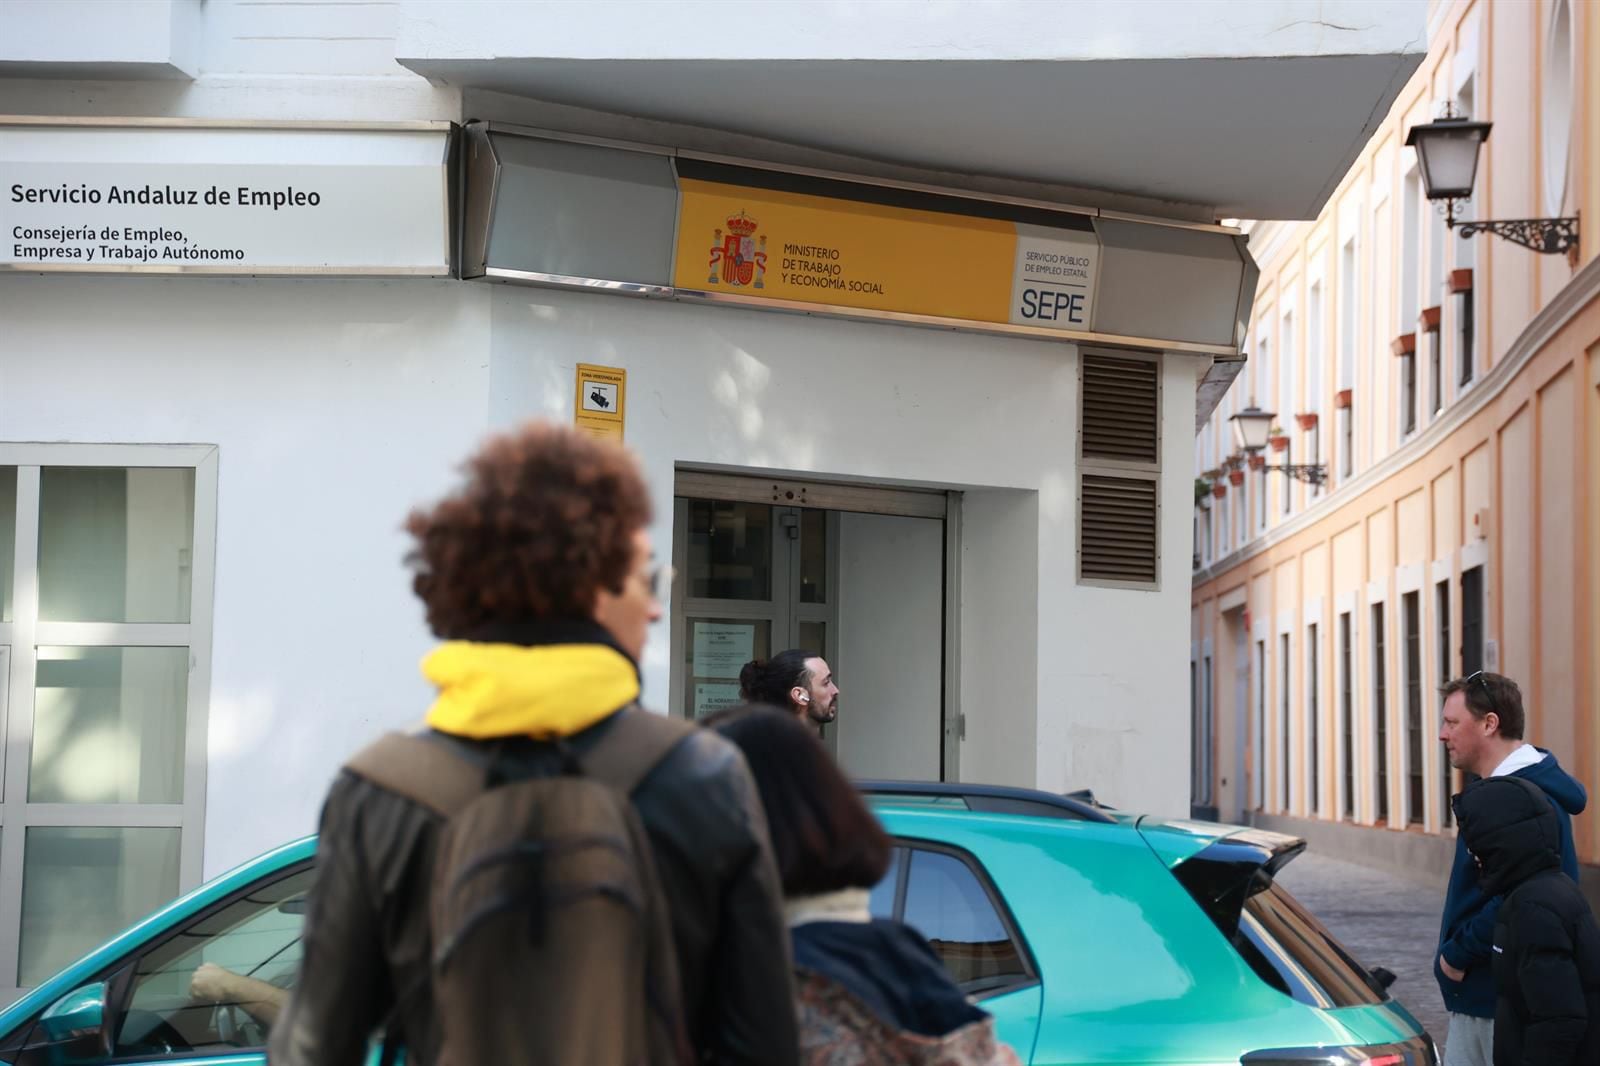 03/01/2024 Oficina de empleo en Sevilla. A 3 de enero de 2024, en Sevilla (Andalucía, España). El paro registrado en las oficinas de los servicios públicos de empleo bajó en 32.157 personas en 2023 en Andalucía en relación al año anterior (-4,42%) hasta los 694.940 desempleados tras un descenso del 2,22% el último mes del año respecto a noviembre (15.813 parados menos). Este número total de desempleados es la cifra más baja al cierre de un año desde 2007.
POLITICA 
Rocío Ruz - Europa Press
